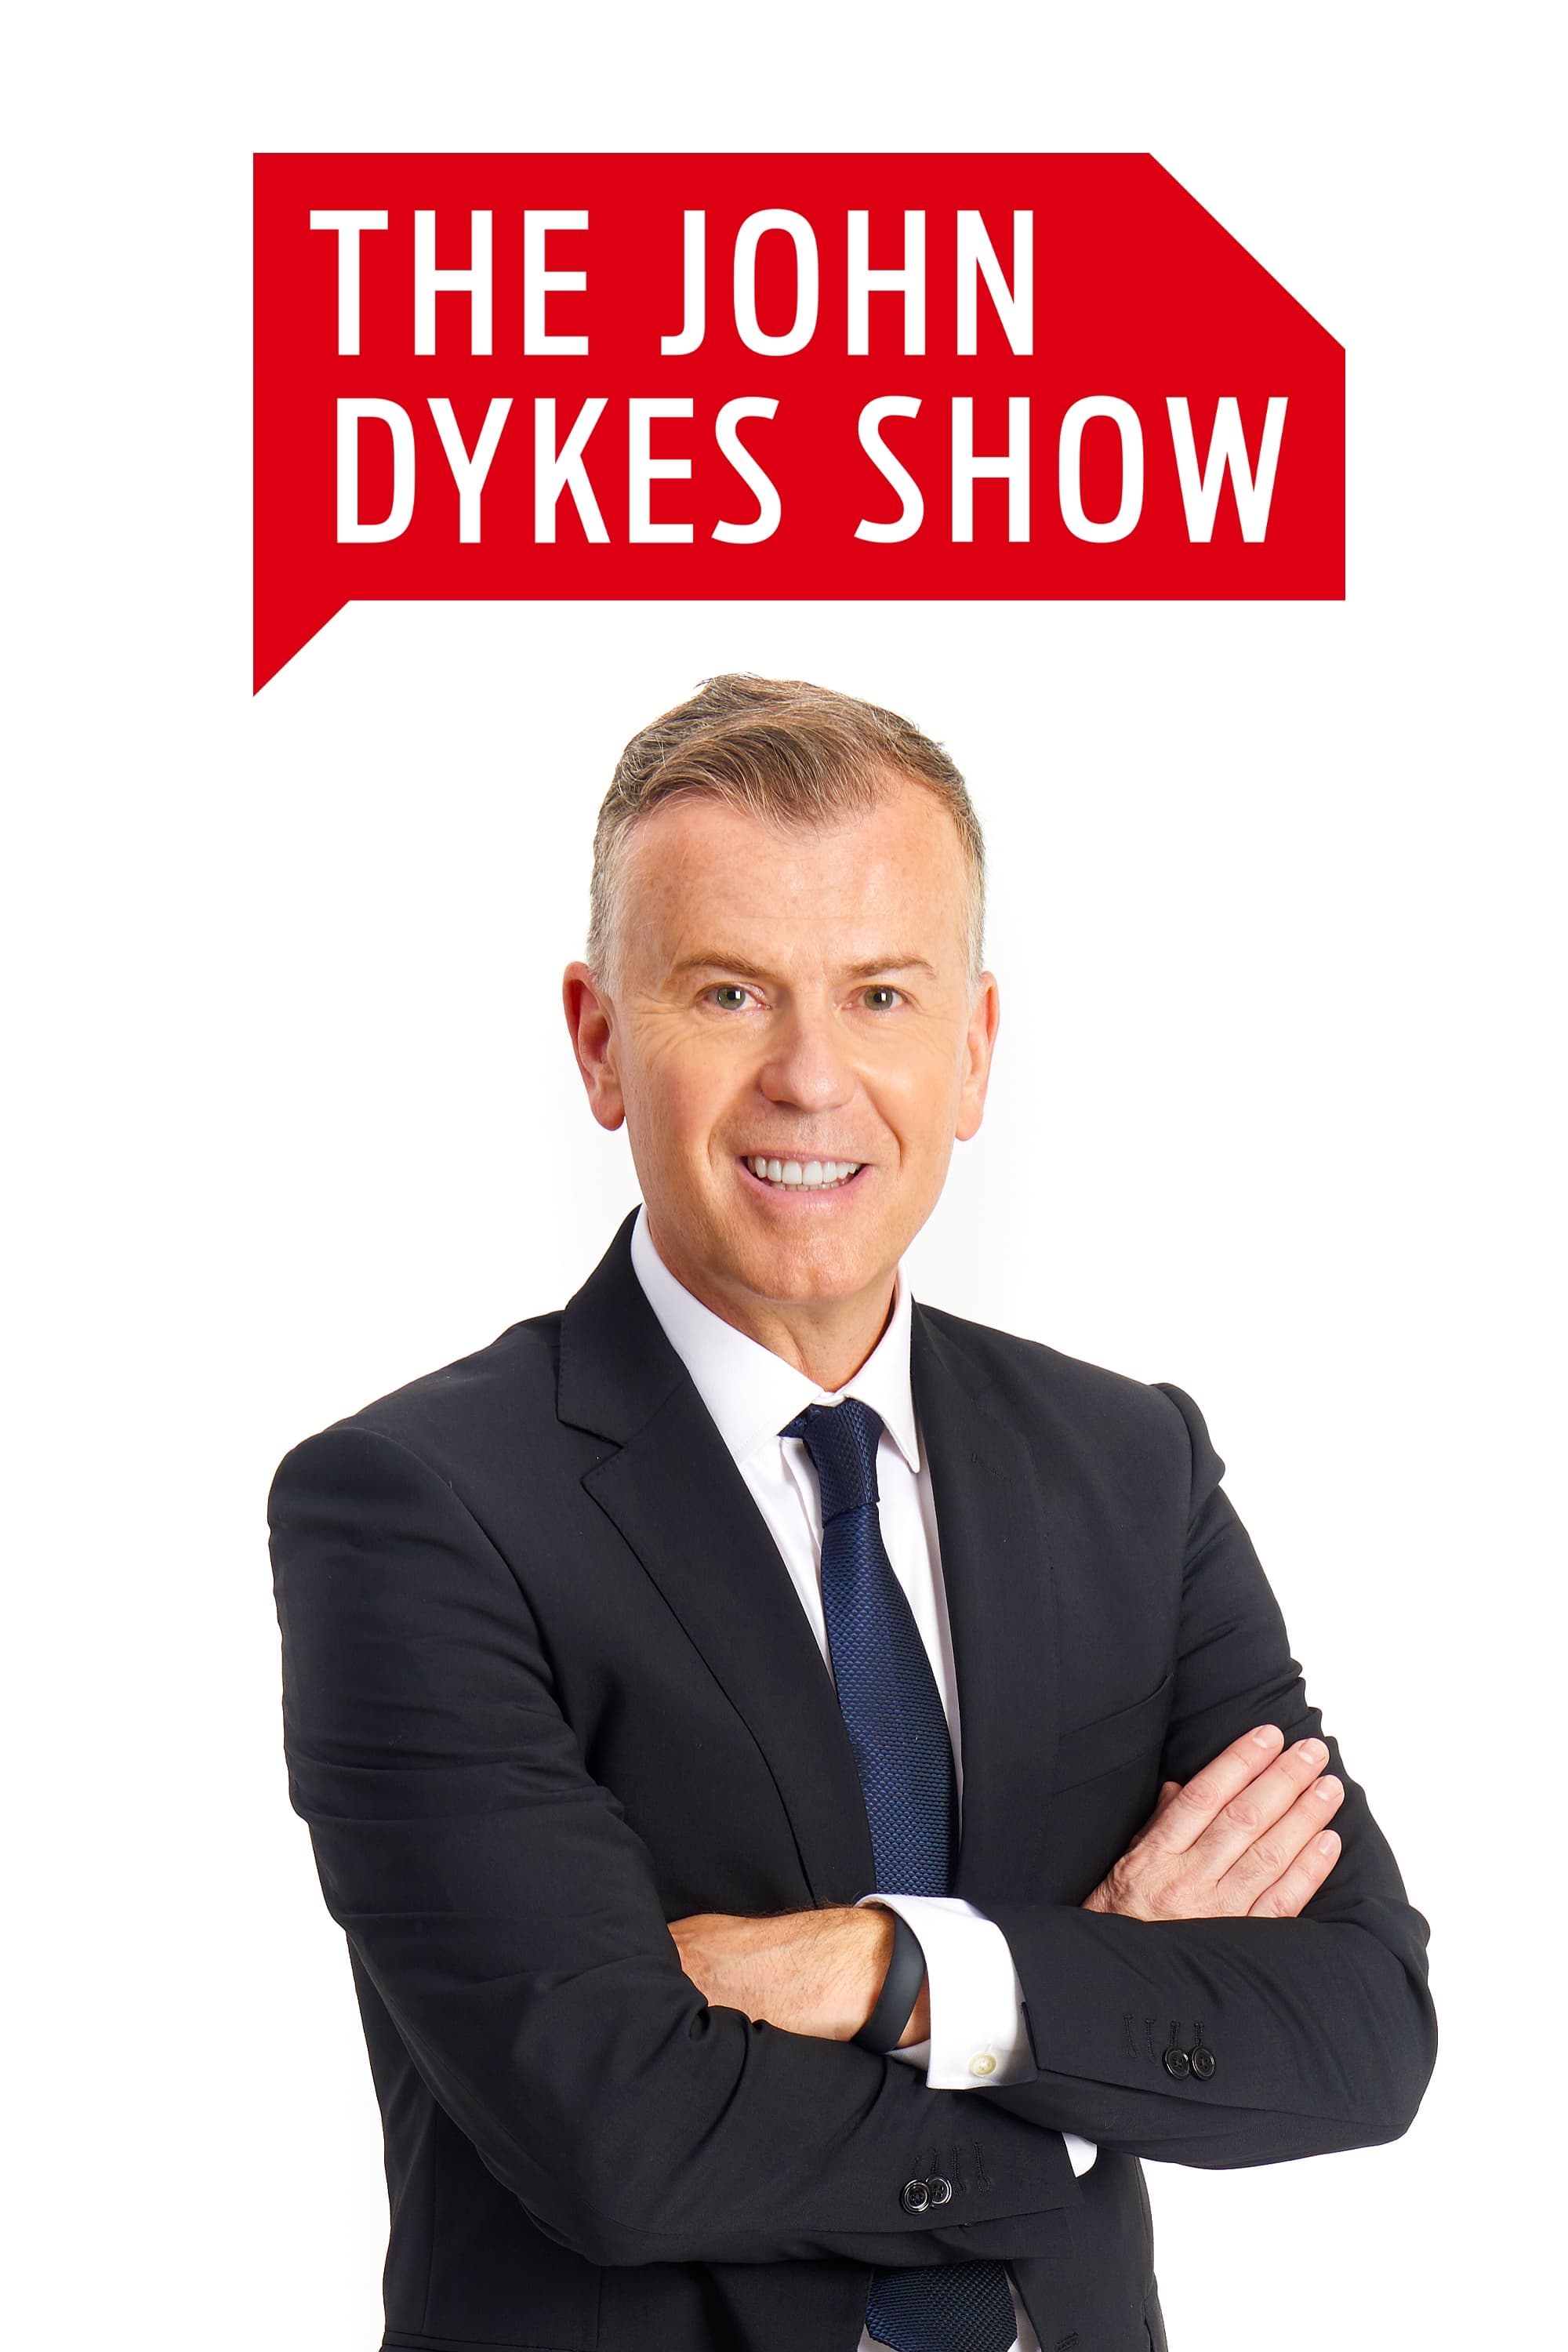 The John Dykes Show